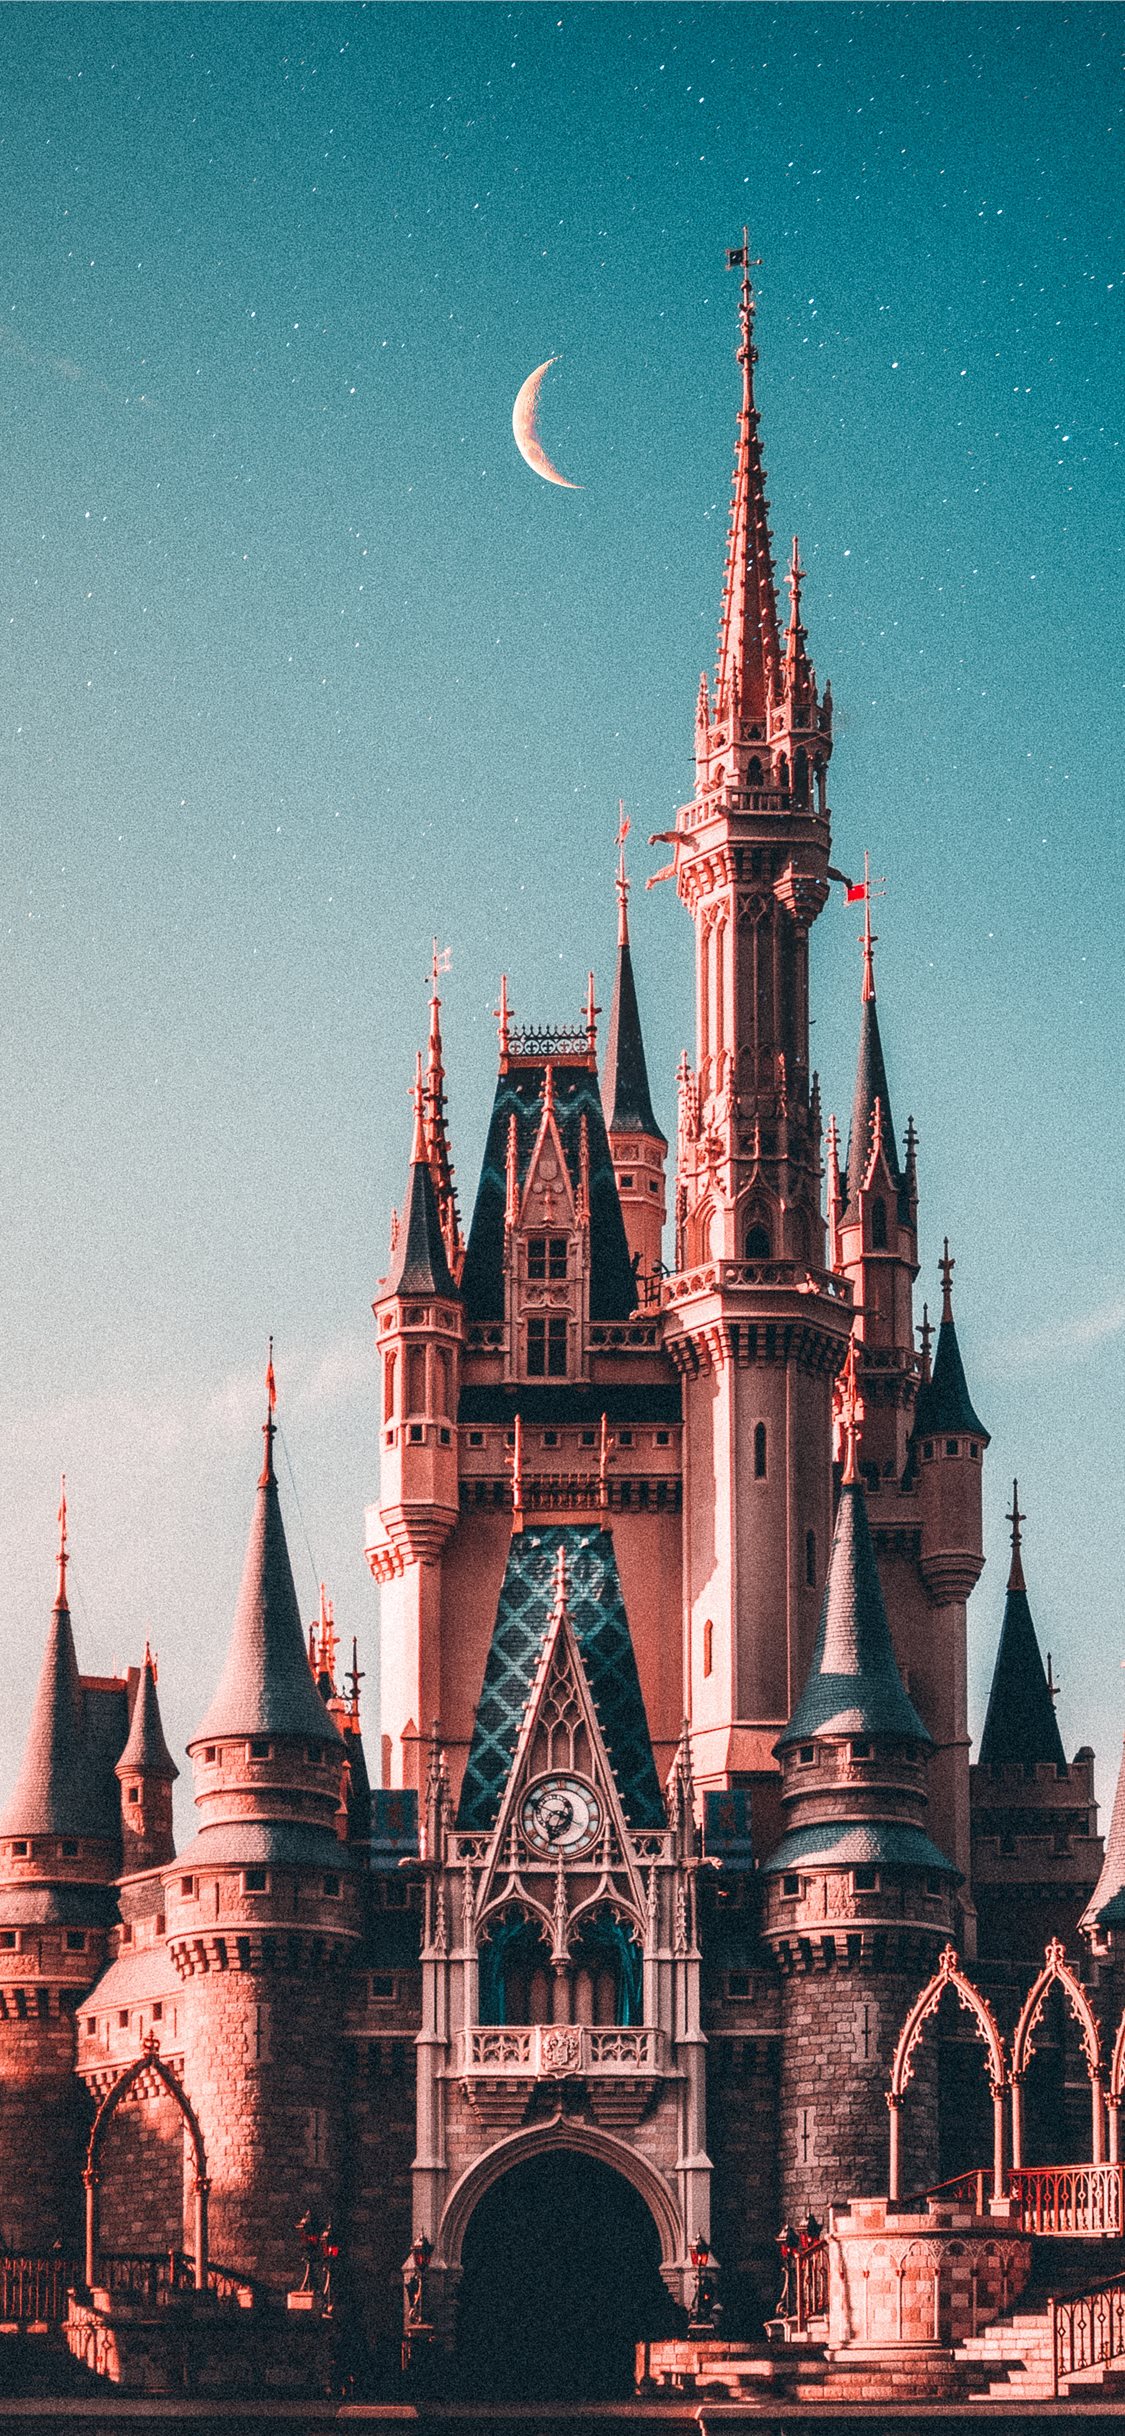 Bất kỳ ai yêu thích Disneyland đều sẽ yêu thích những hình nền iPhone với chất lượng cao này. Hãy cảm nhận những hình ảnh lâu đài Disneyland dưới góc độ khác nhau và cùng chia sẻ với bạn bè. 